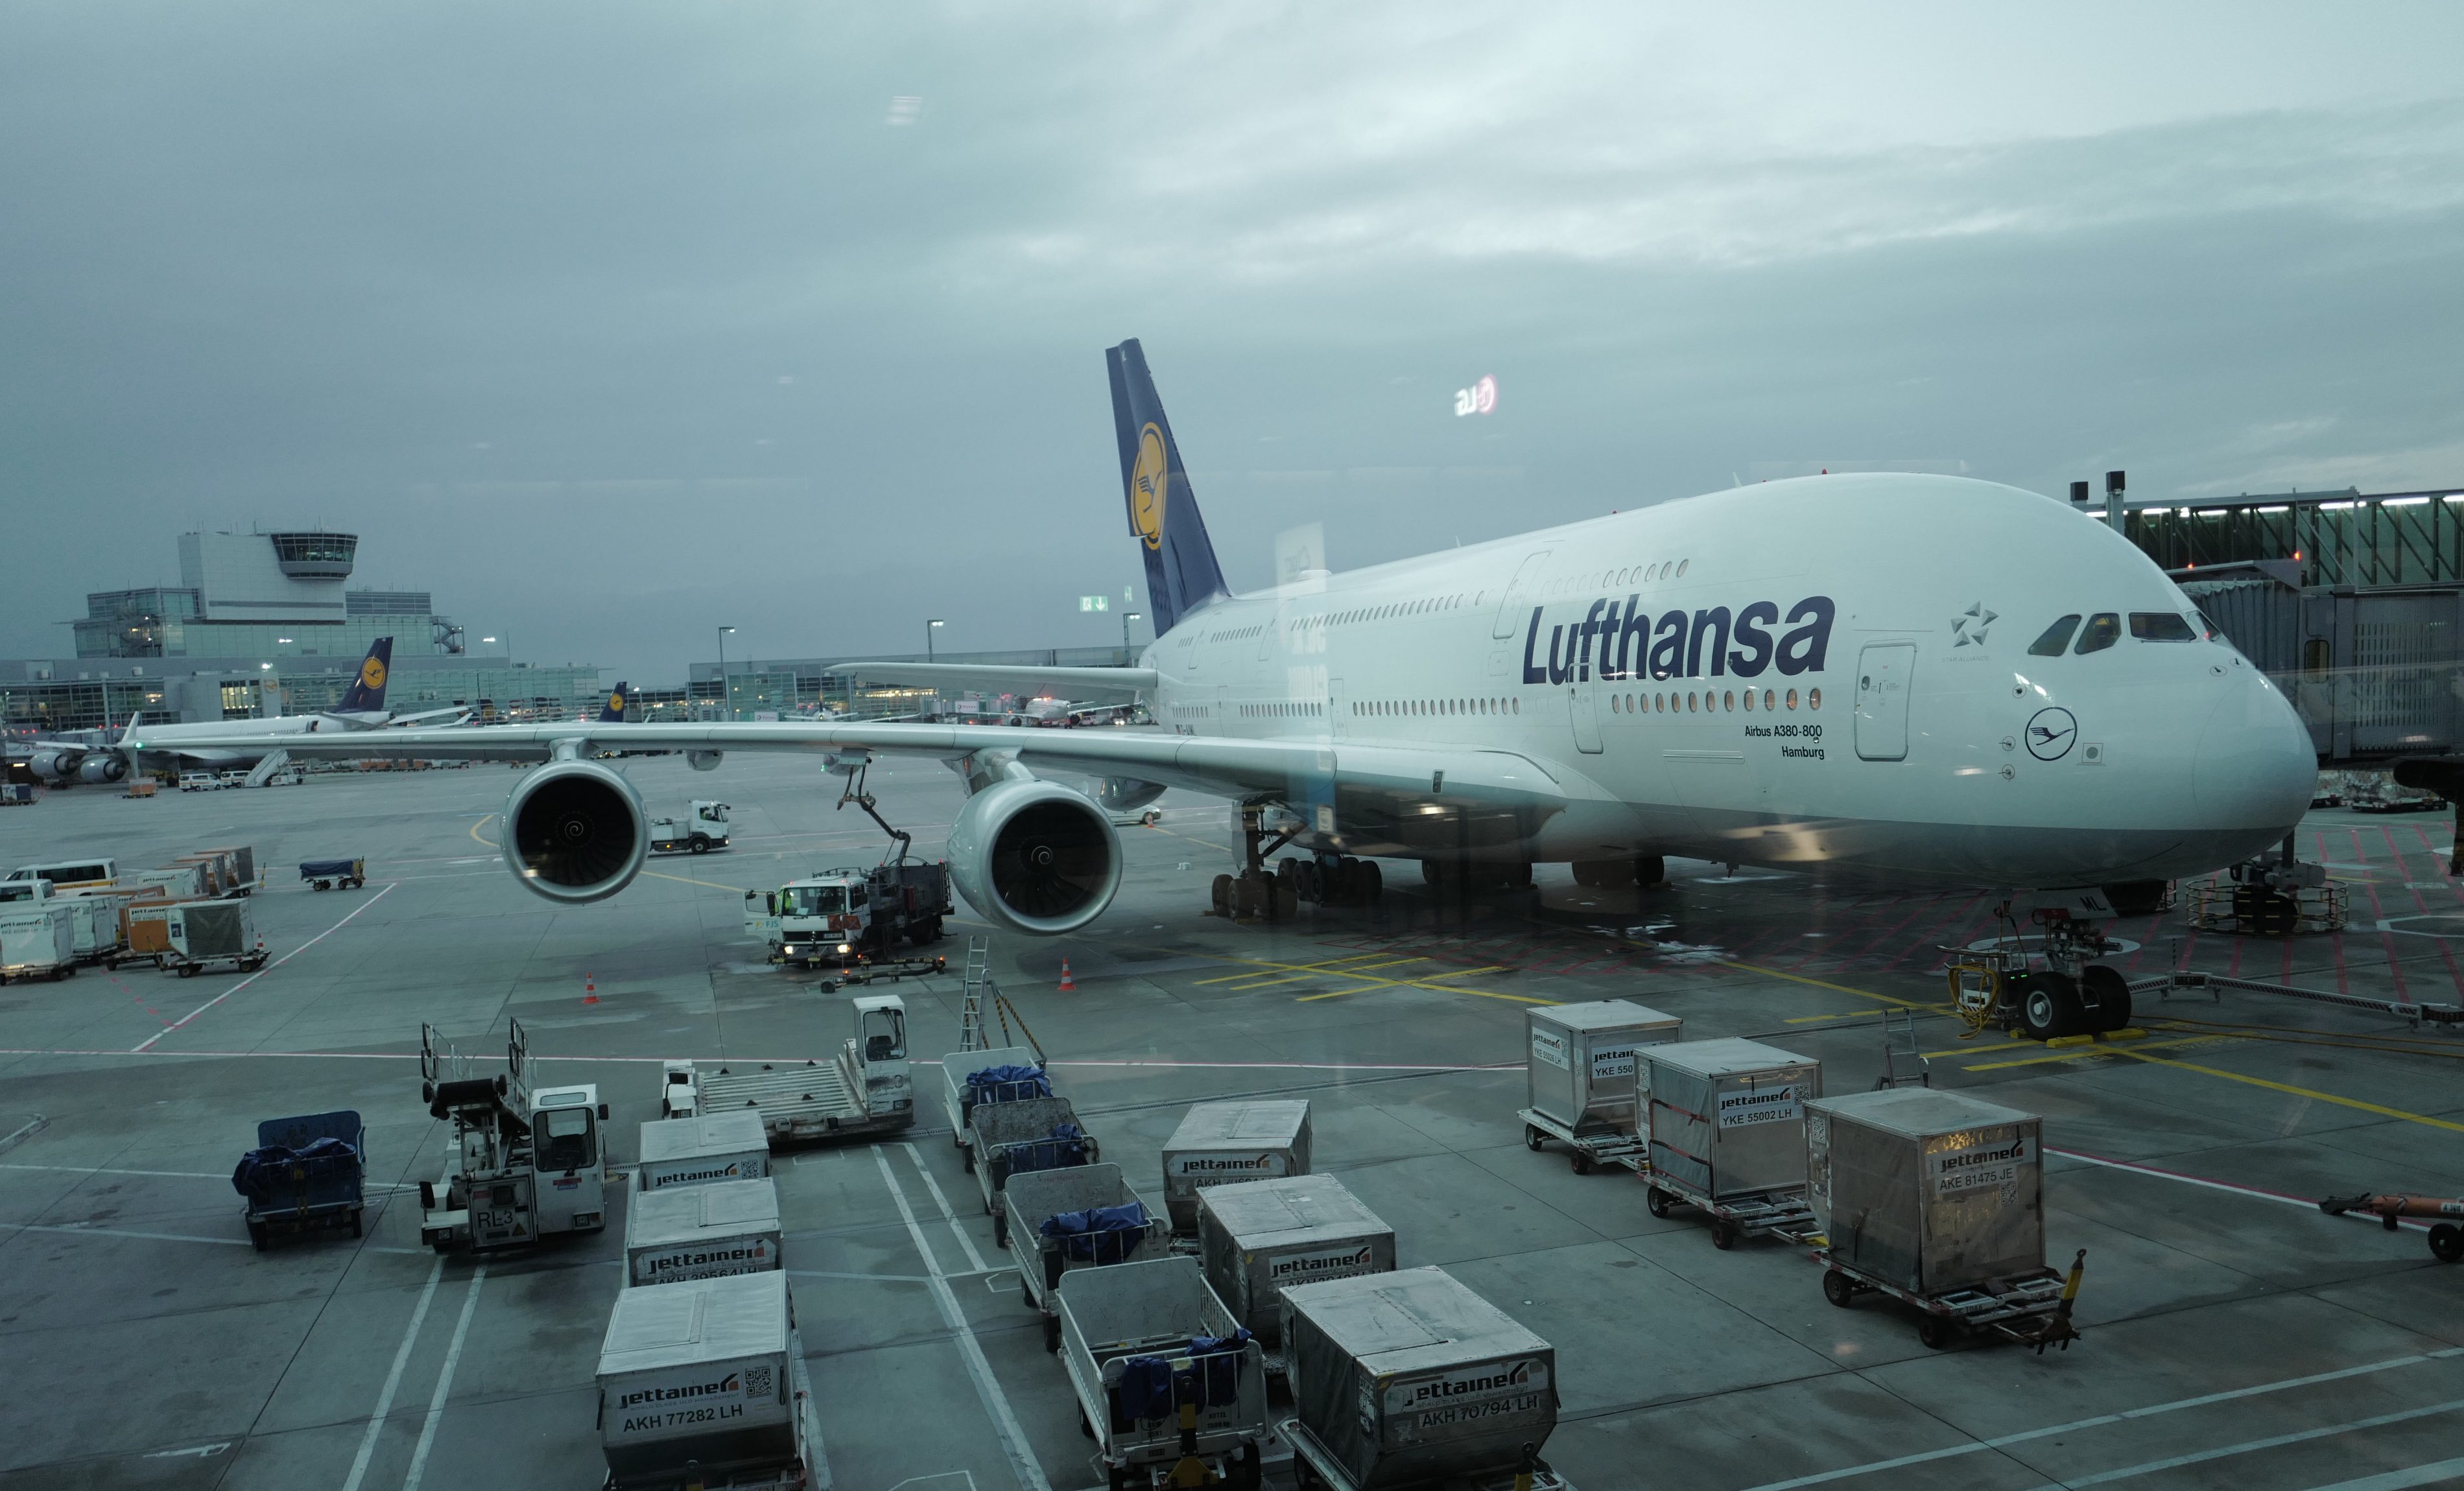 View of Lufthansa Plane